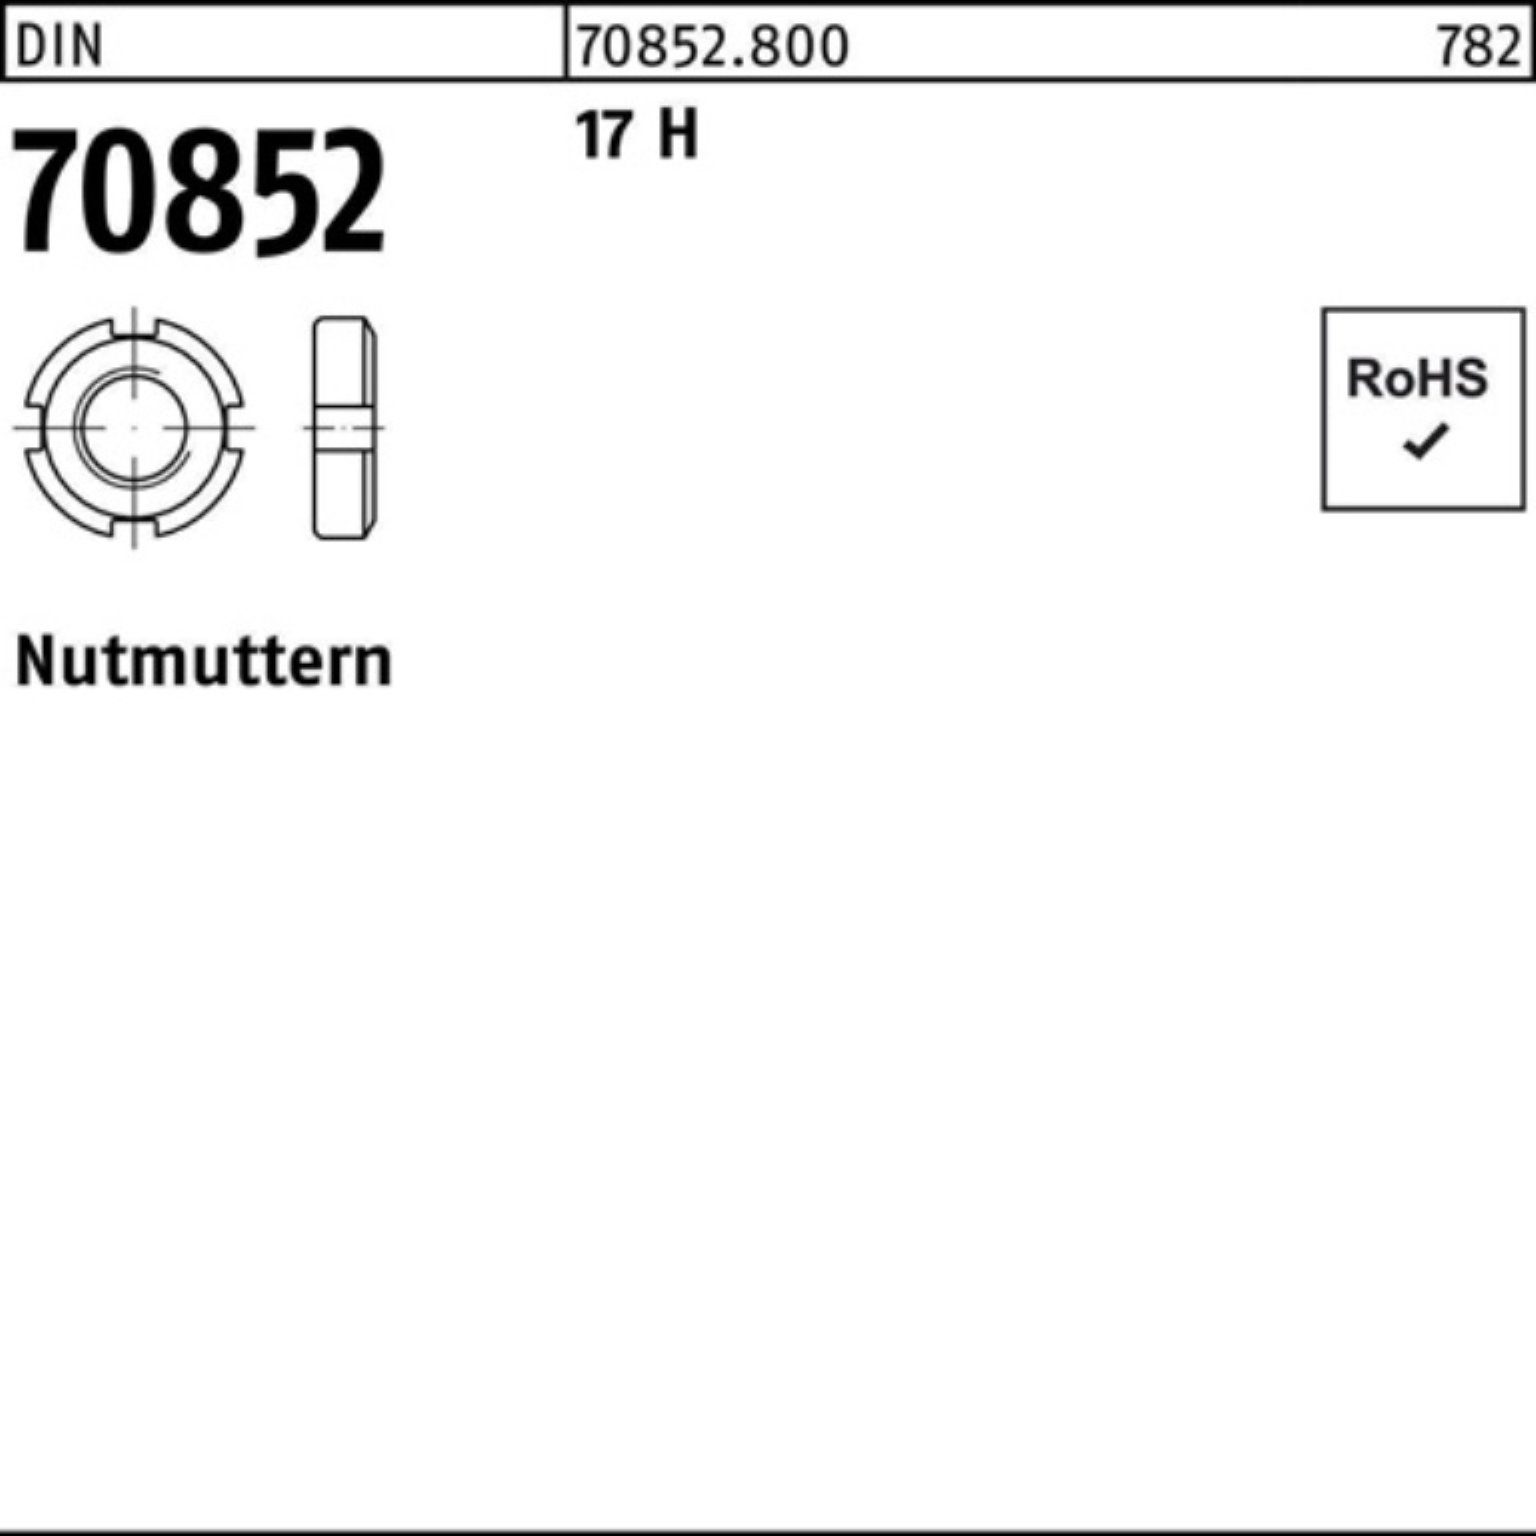 Reyher Nutmutter 100er Pack Nutmutter DIN 70852 M38x 1,5 17 H 1 Stück DIN 70852 17 H N